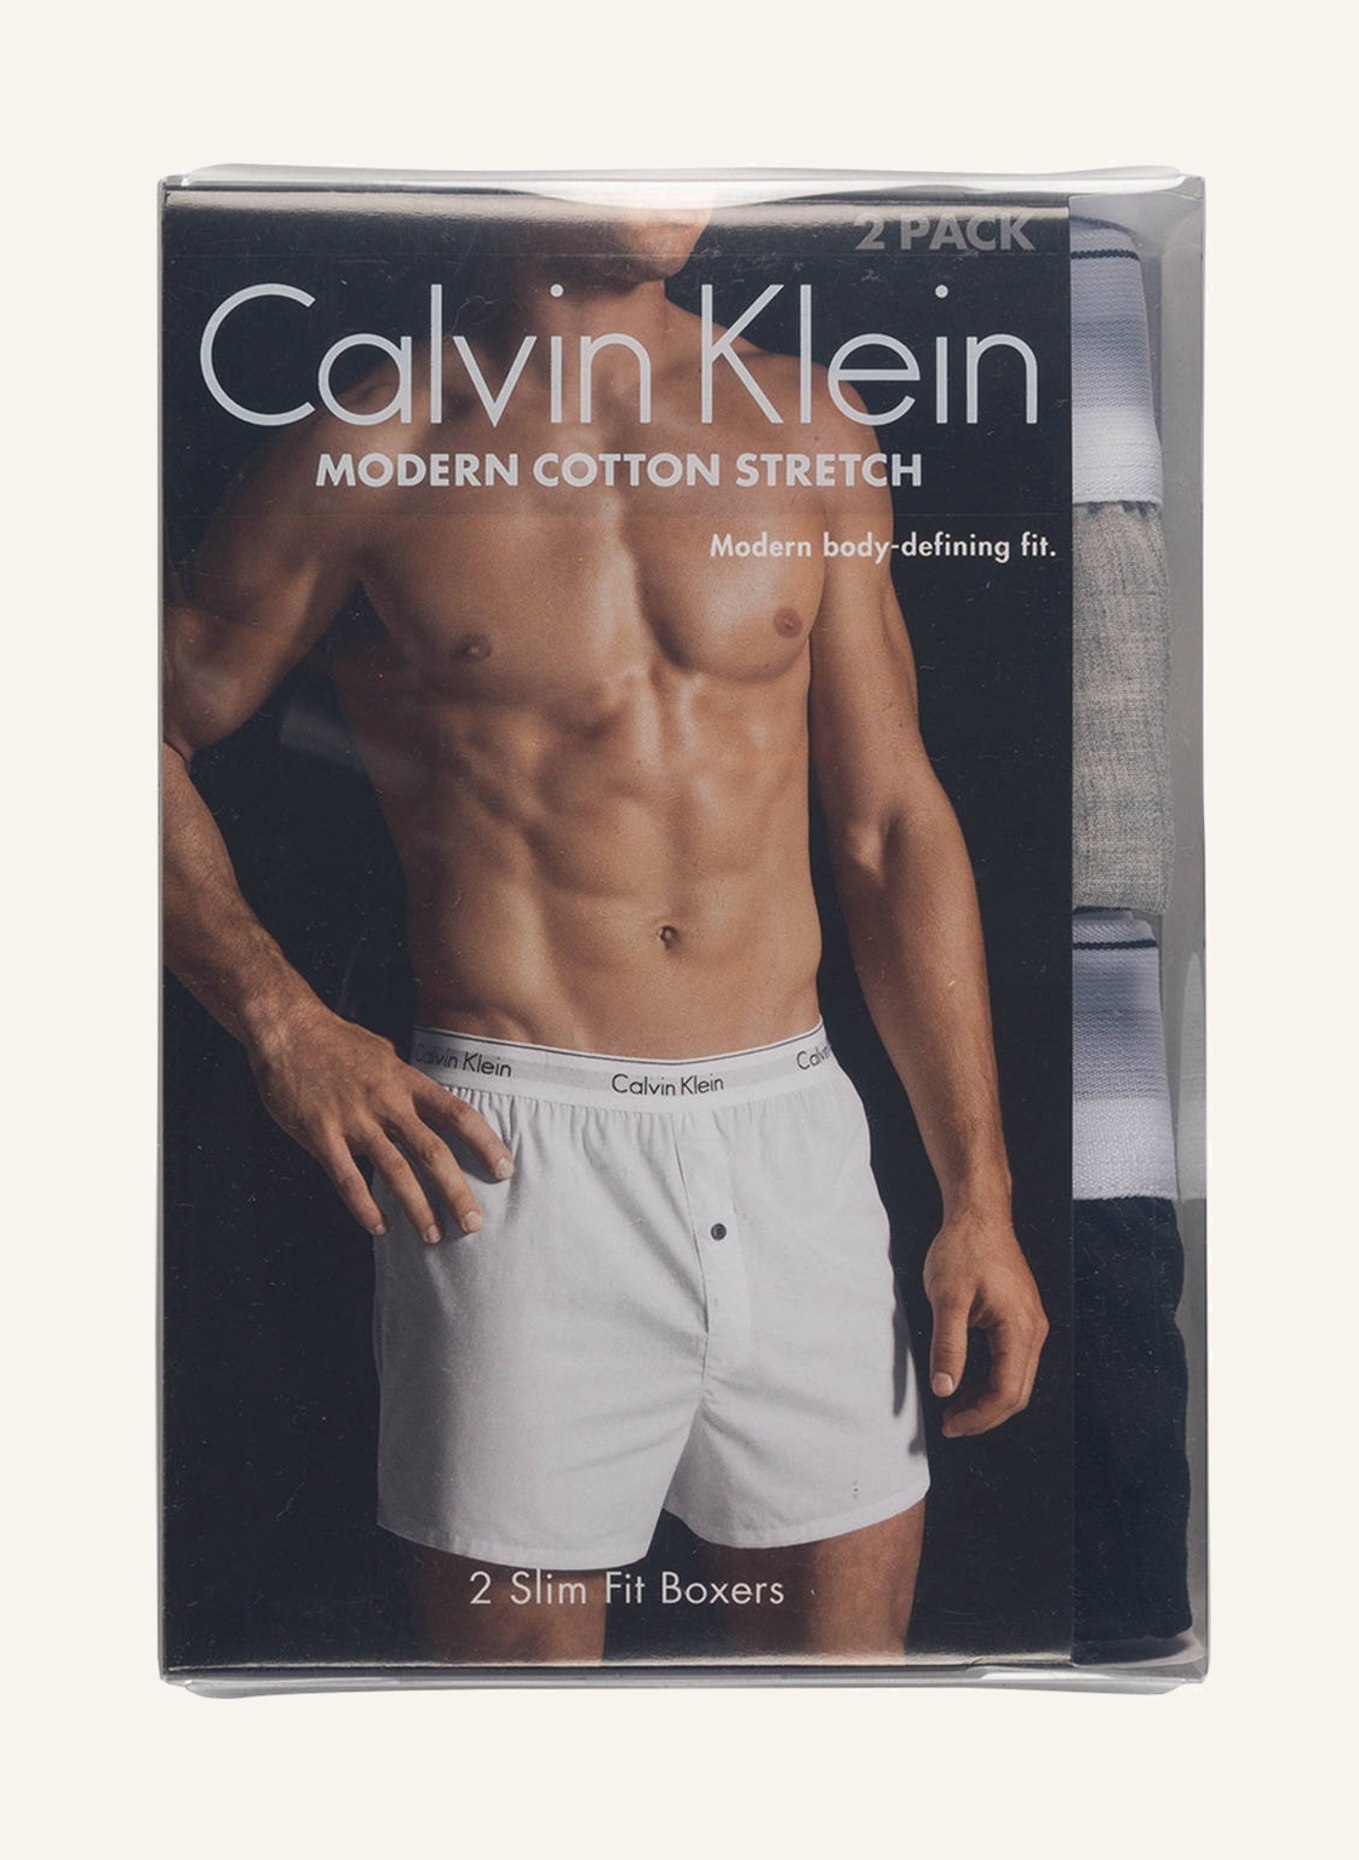 Modern Cotton Stretch boxer briefs 3-pack, Calvin Klein